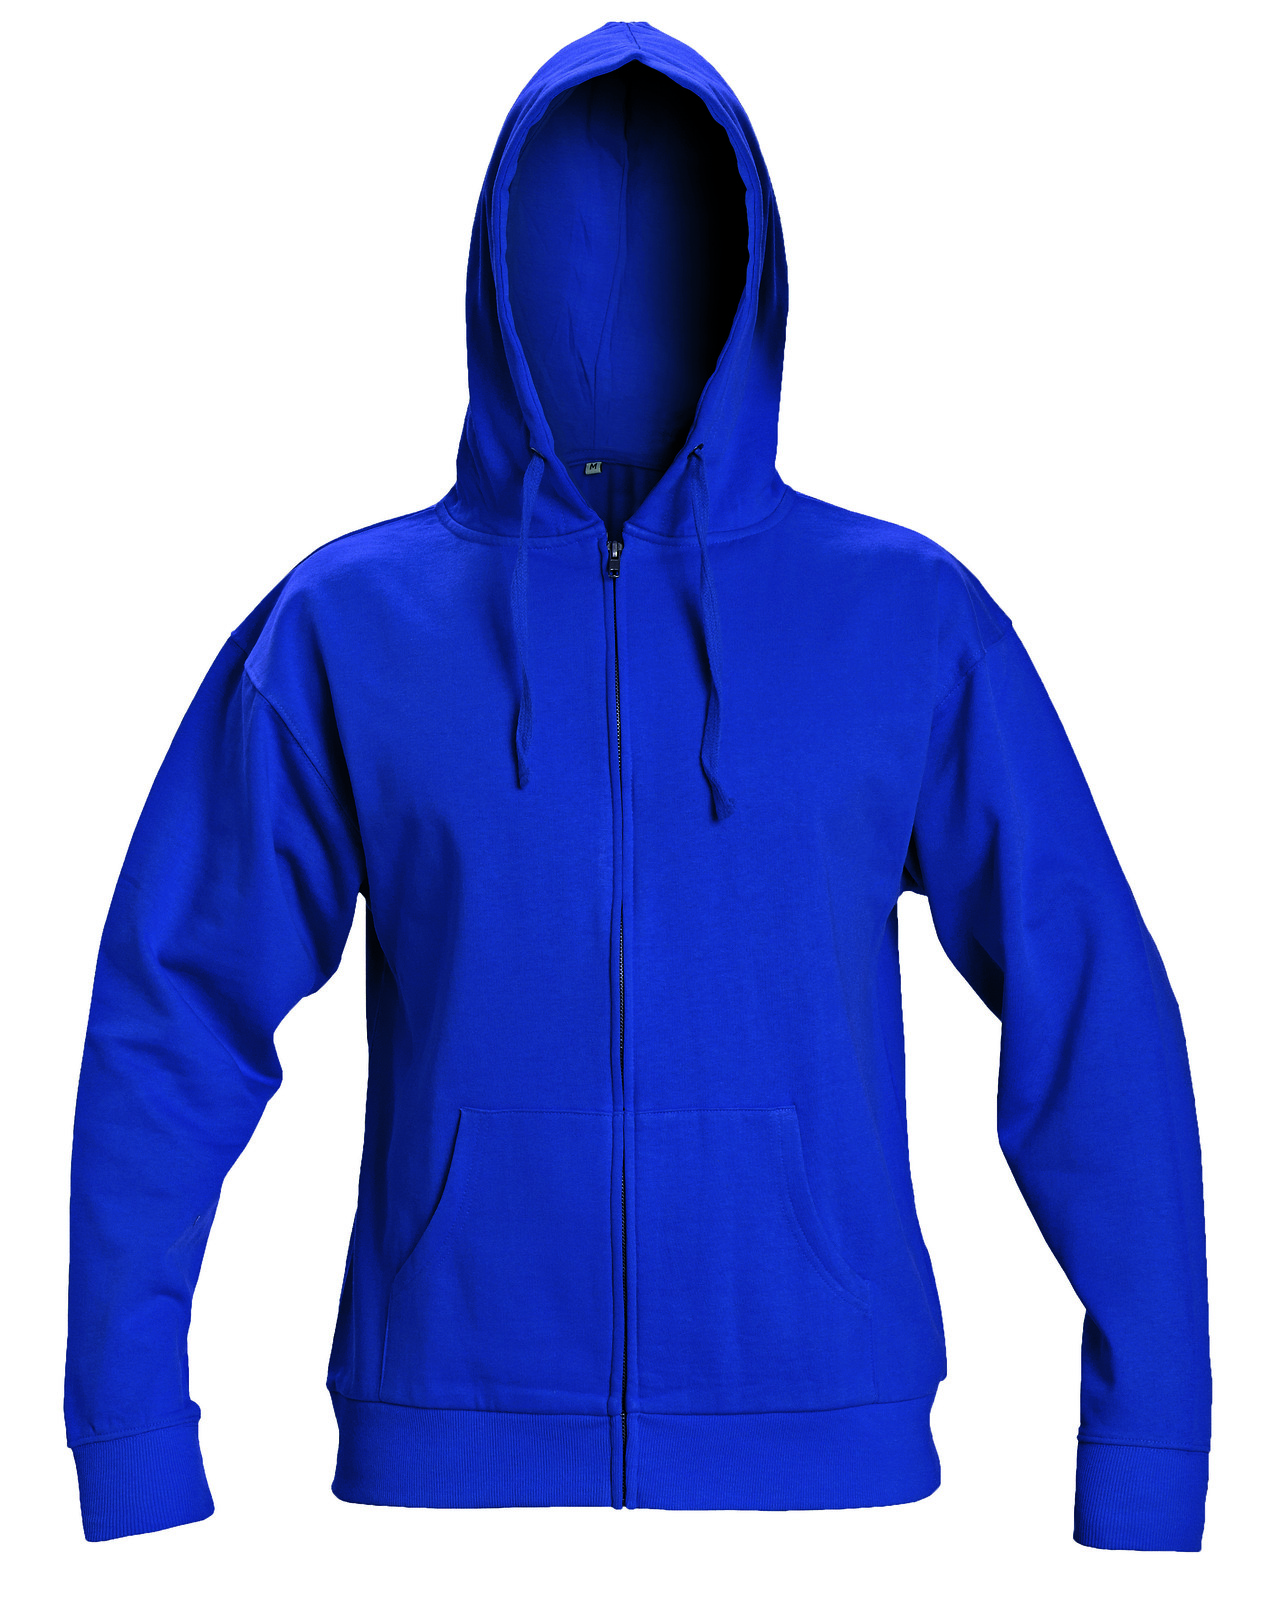 Mikina s kapucňou Nagar - veľkosť: XXL, farba: modrá